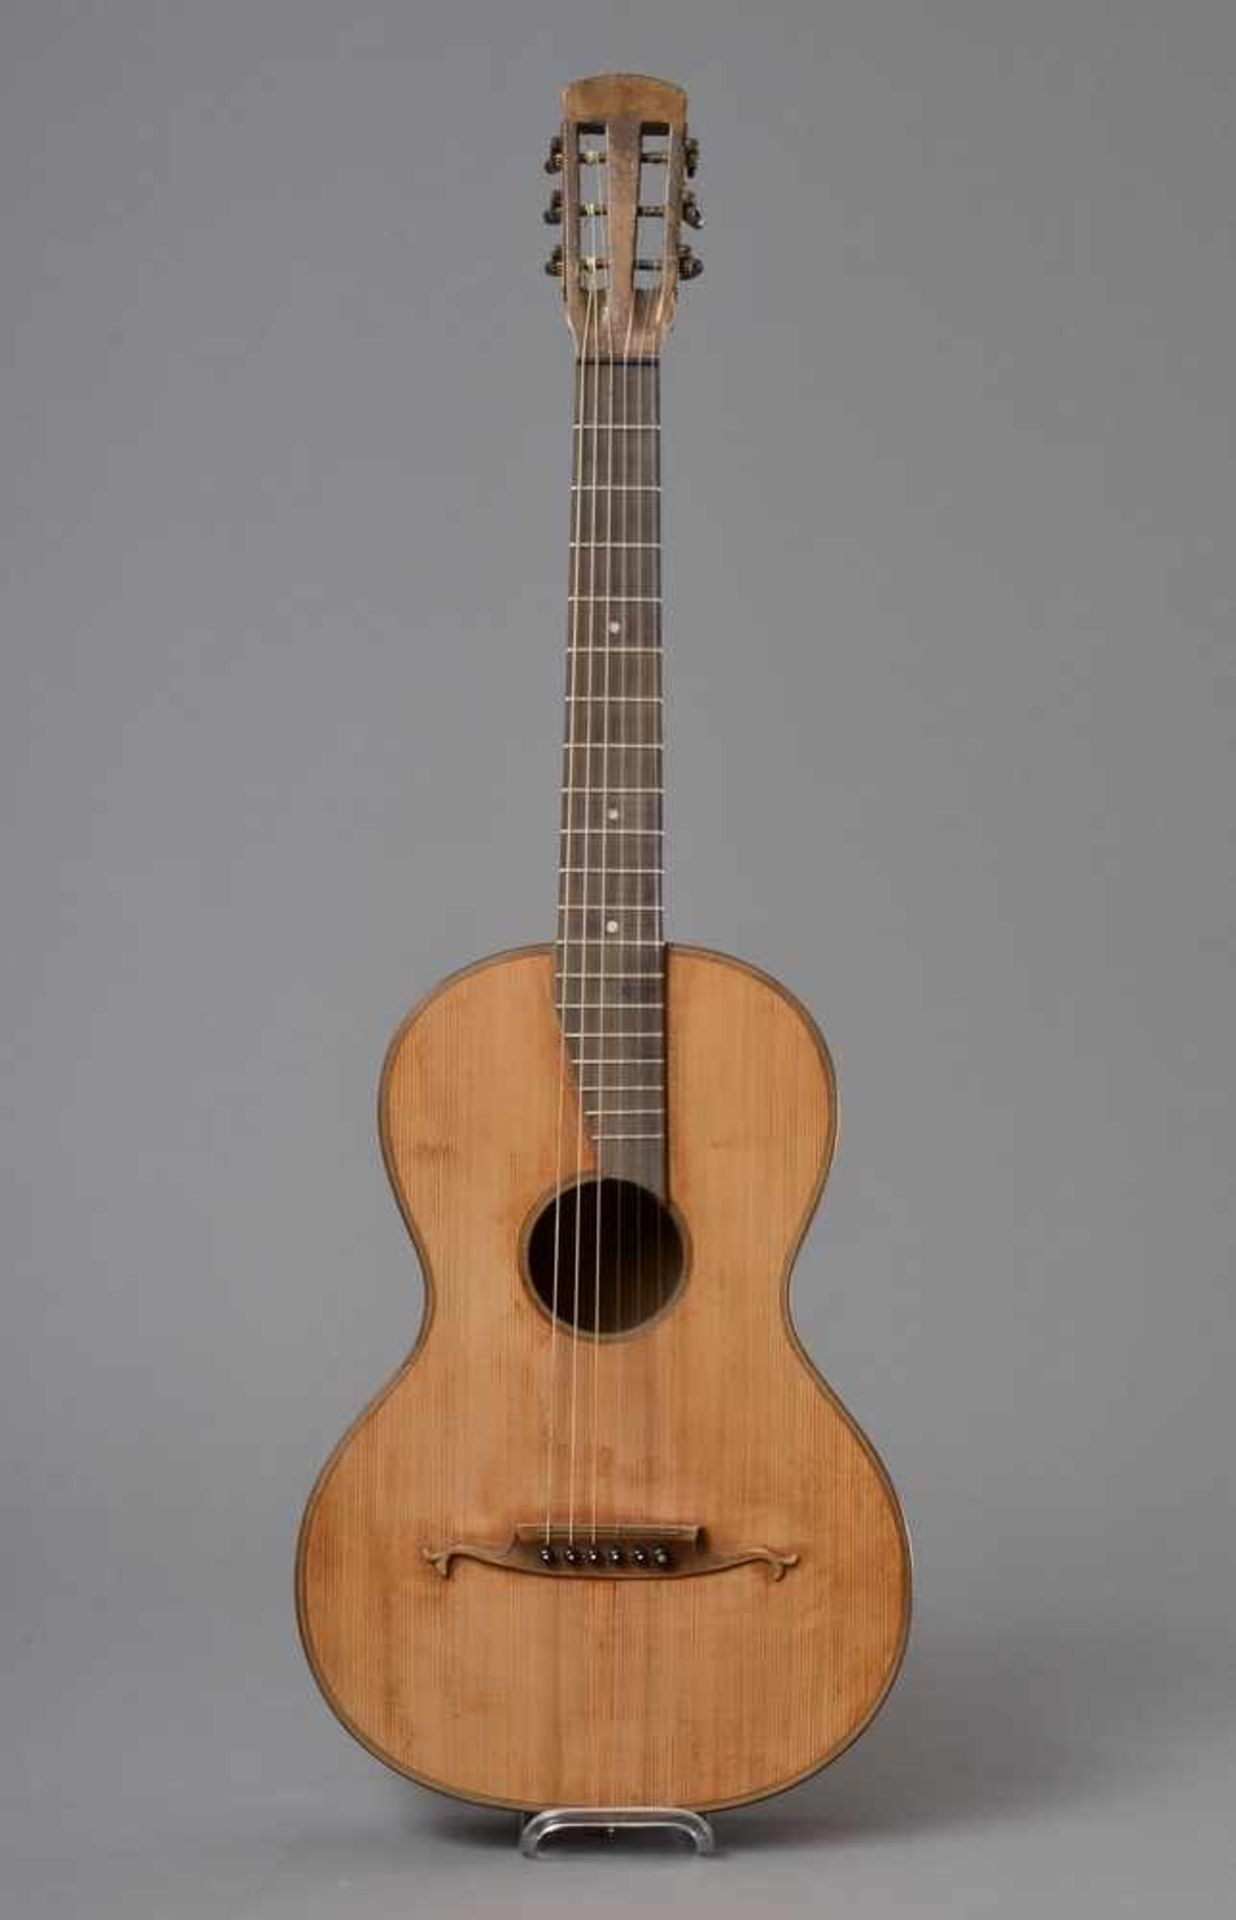 Historische Gitarre, Mensur 61,3cm, Gesamtlänge 93cm, Saitenhöhe 5mm, ca. 100 Jahre alt, spielbar - Bild 7 aus 7